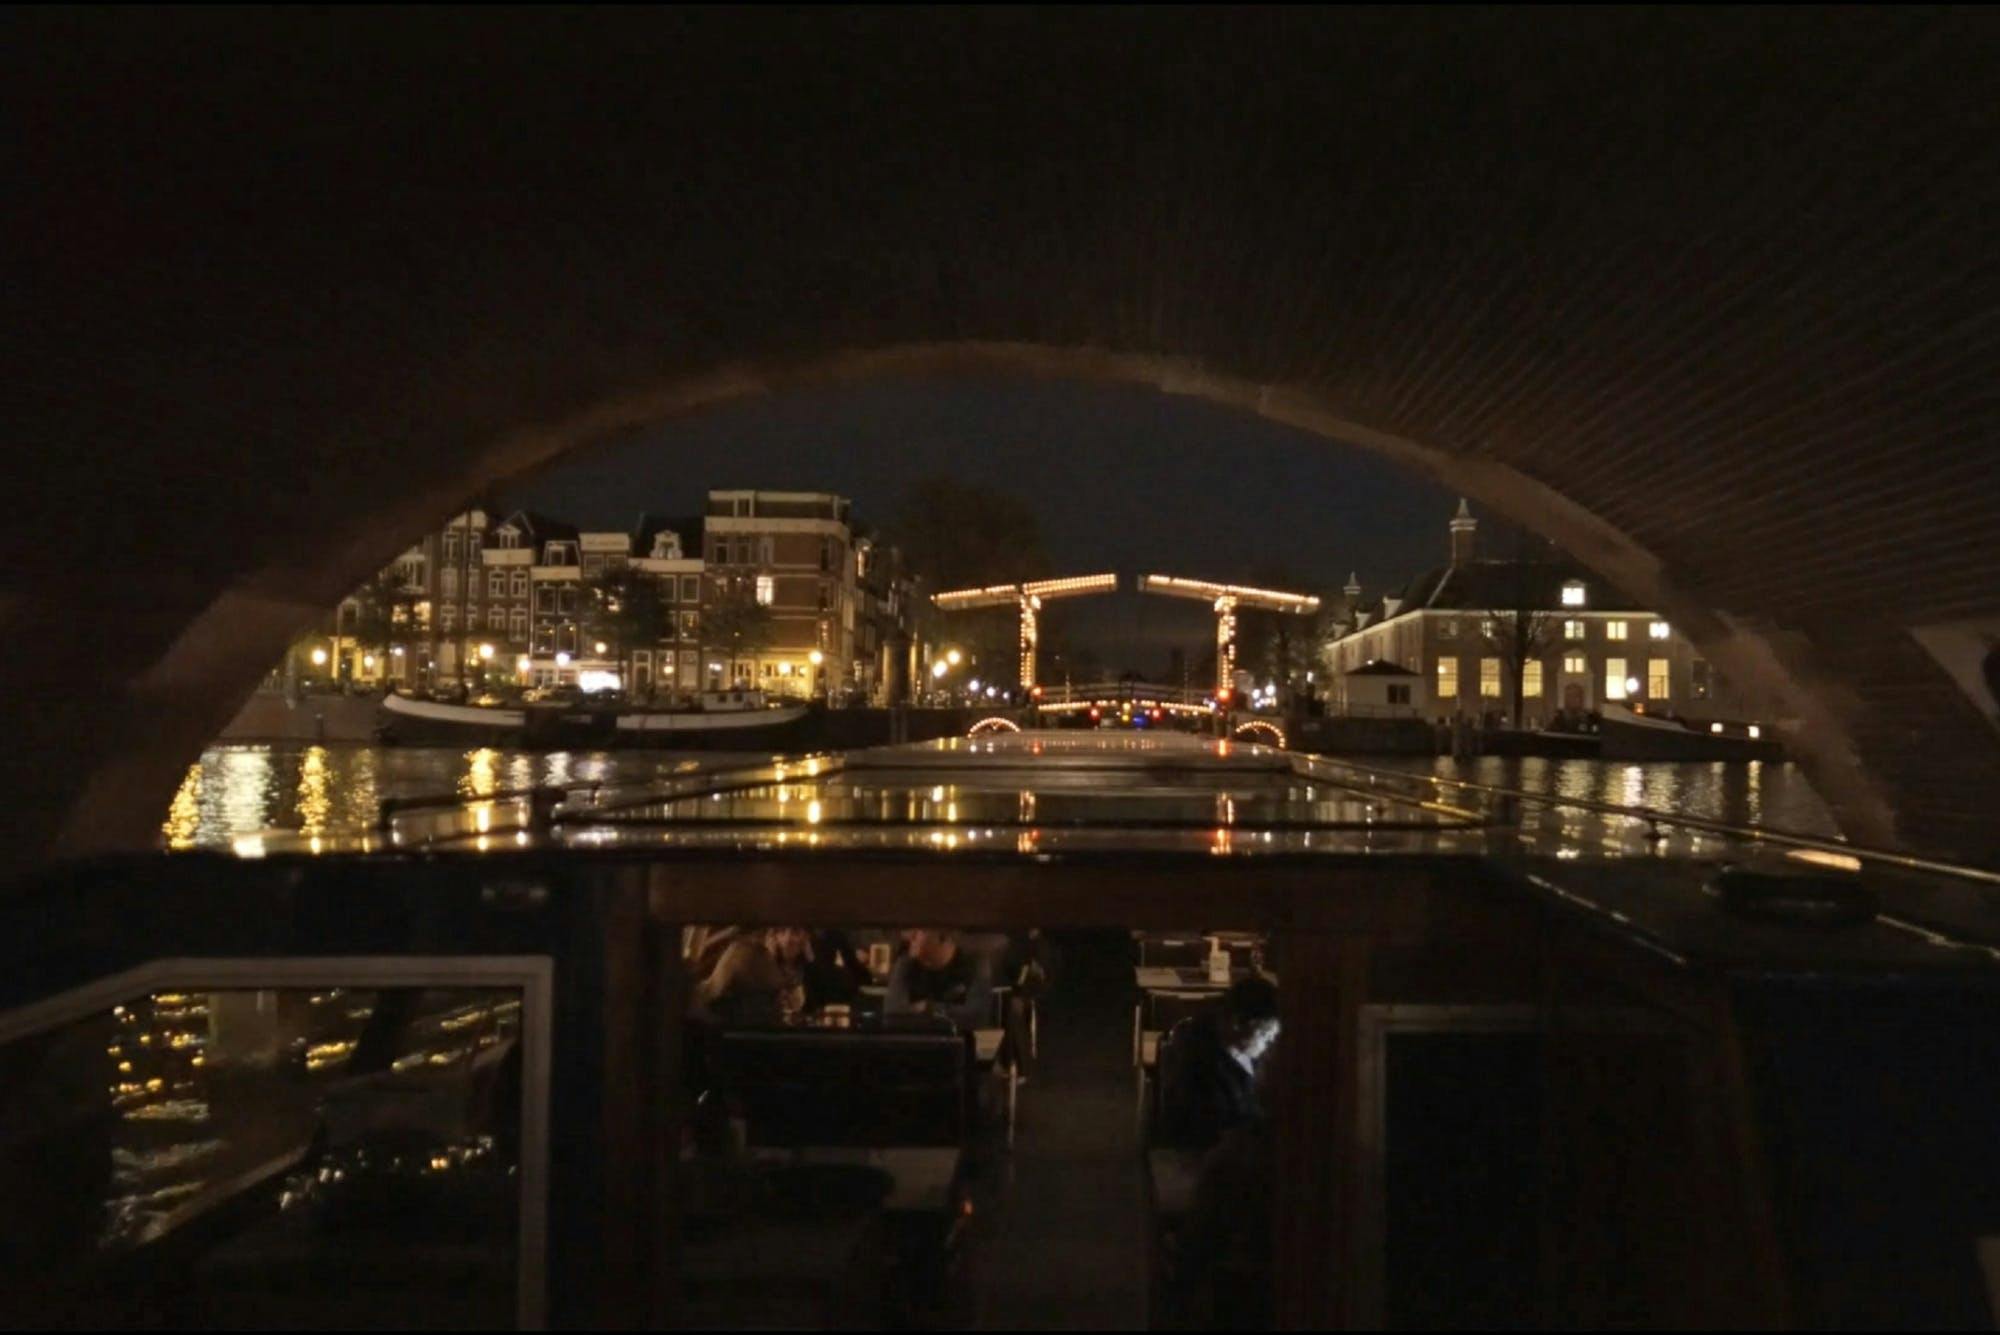 Abendliche Grachtenfahrt in Amsterdam mit Snackbox